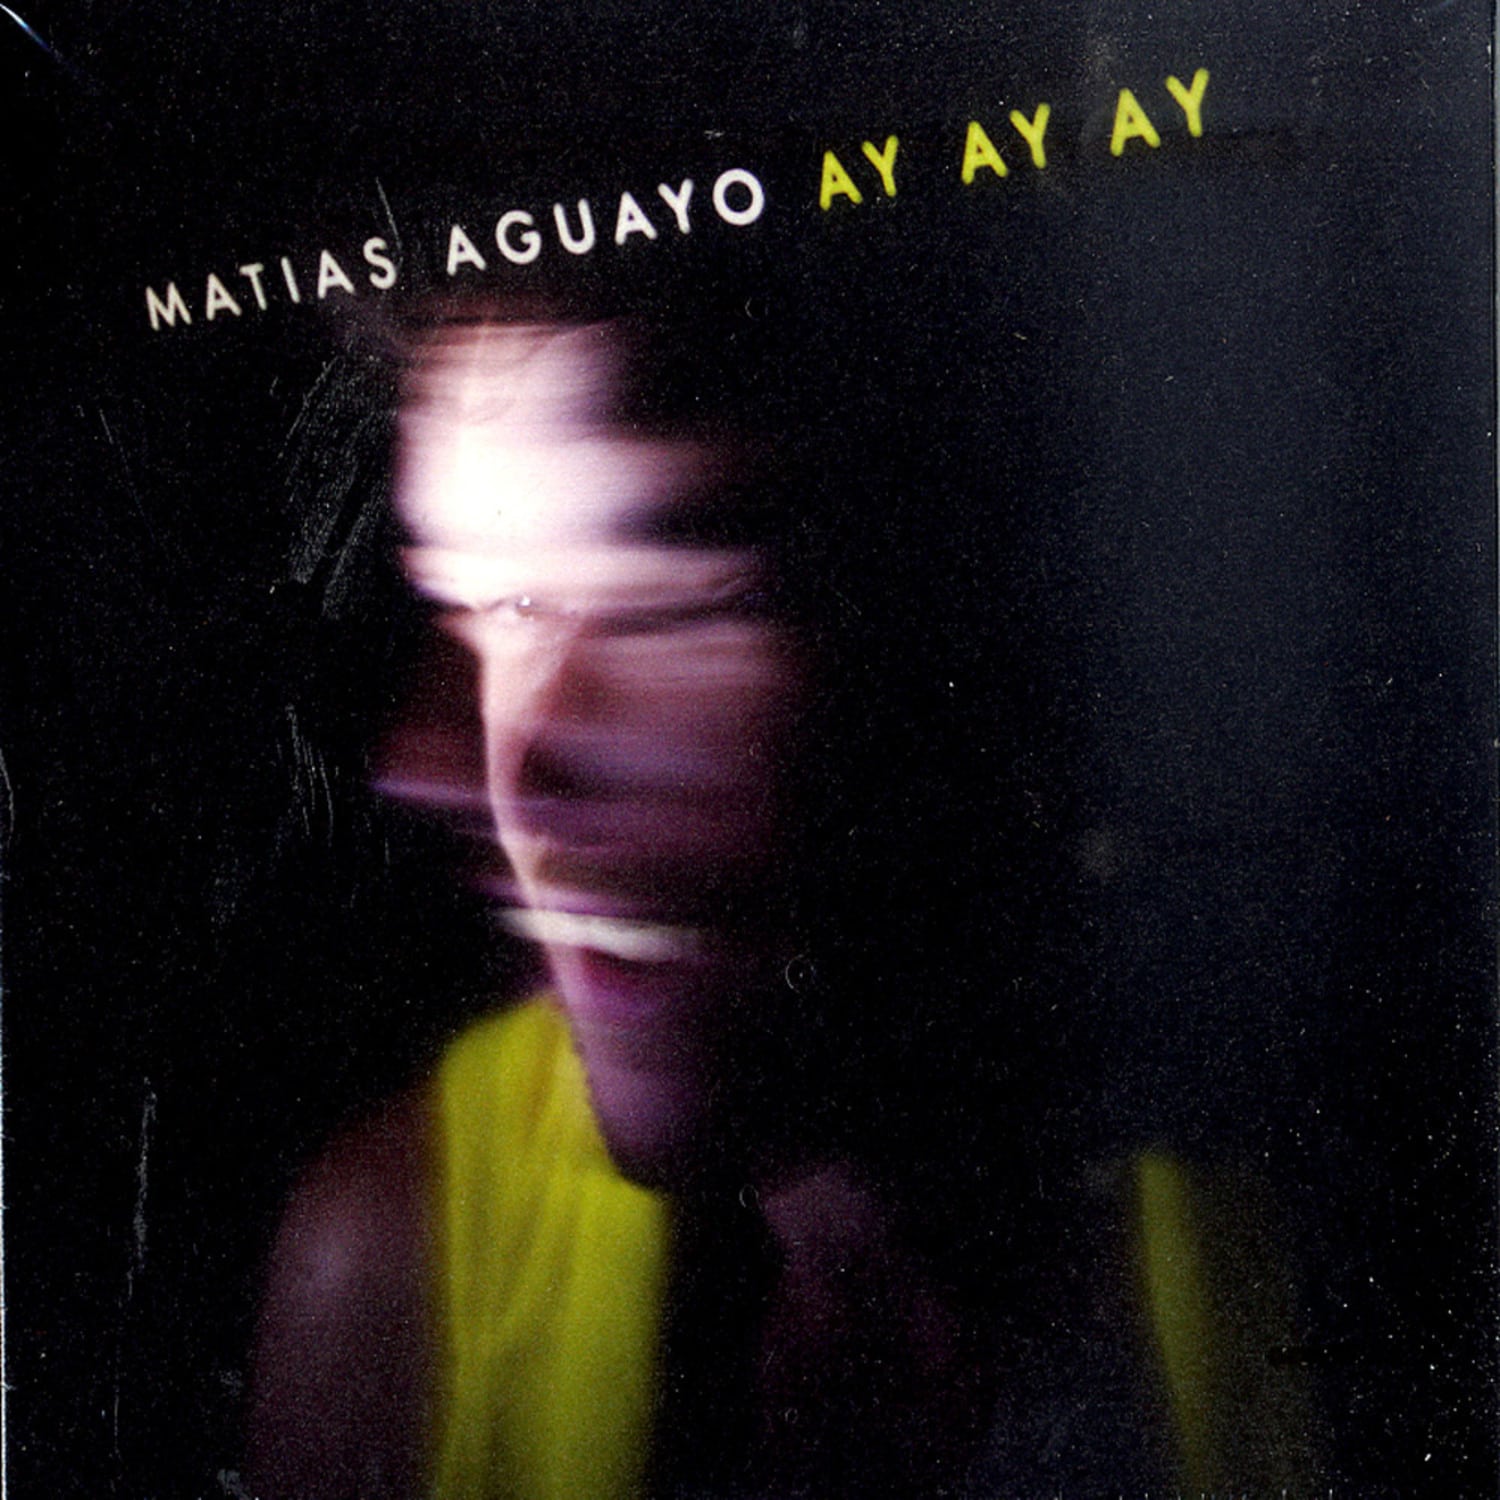 Matias Aguayo - AY AY AY 